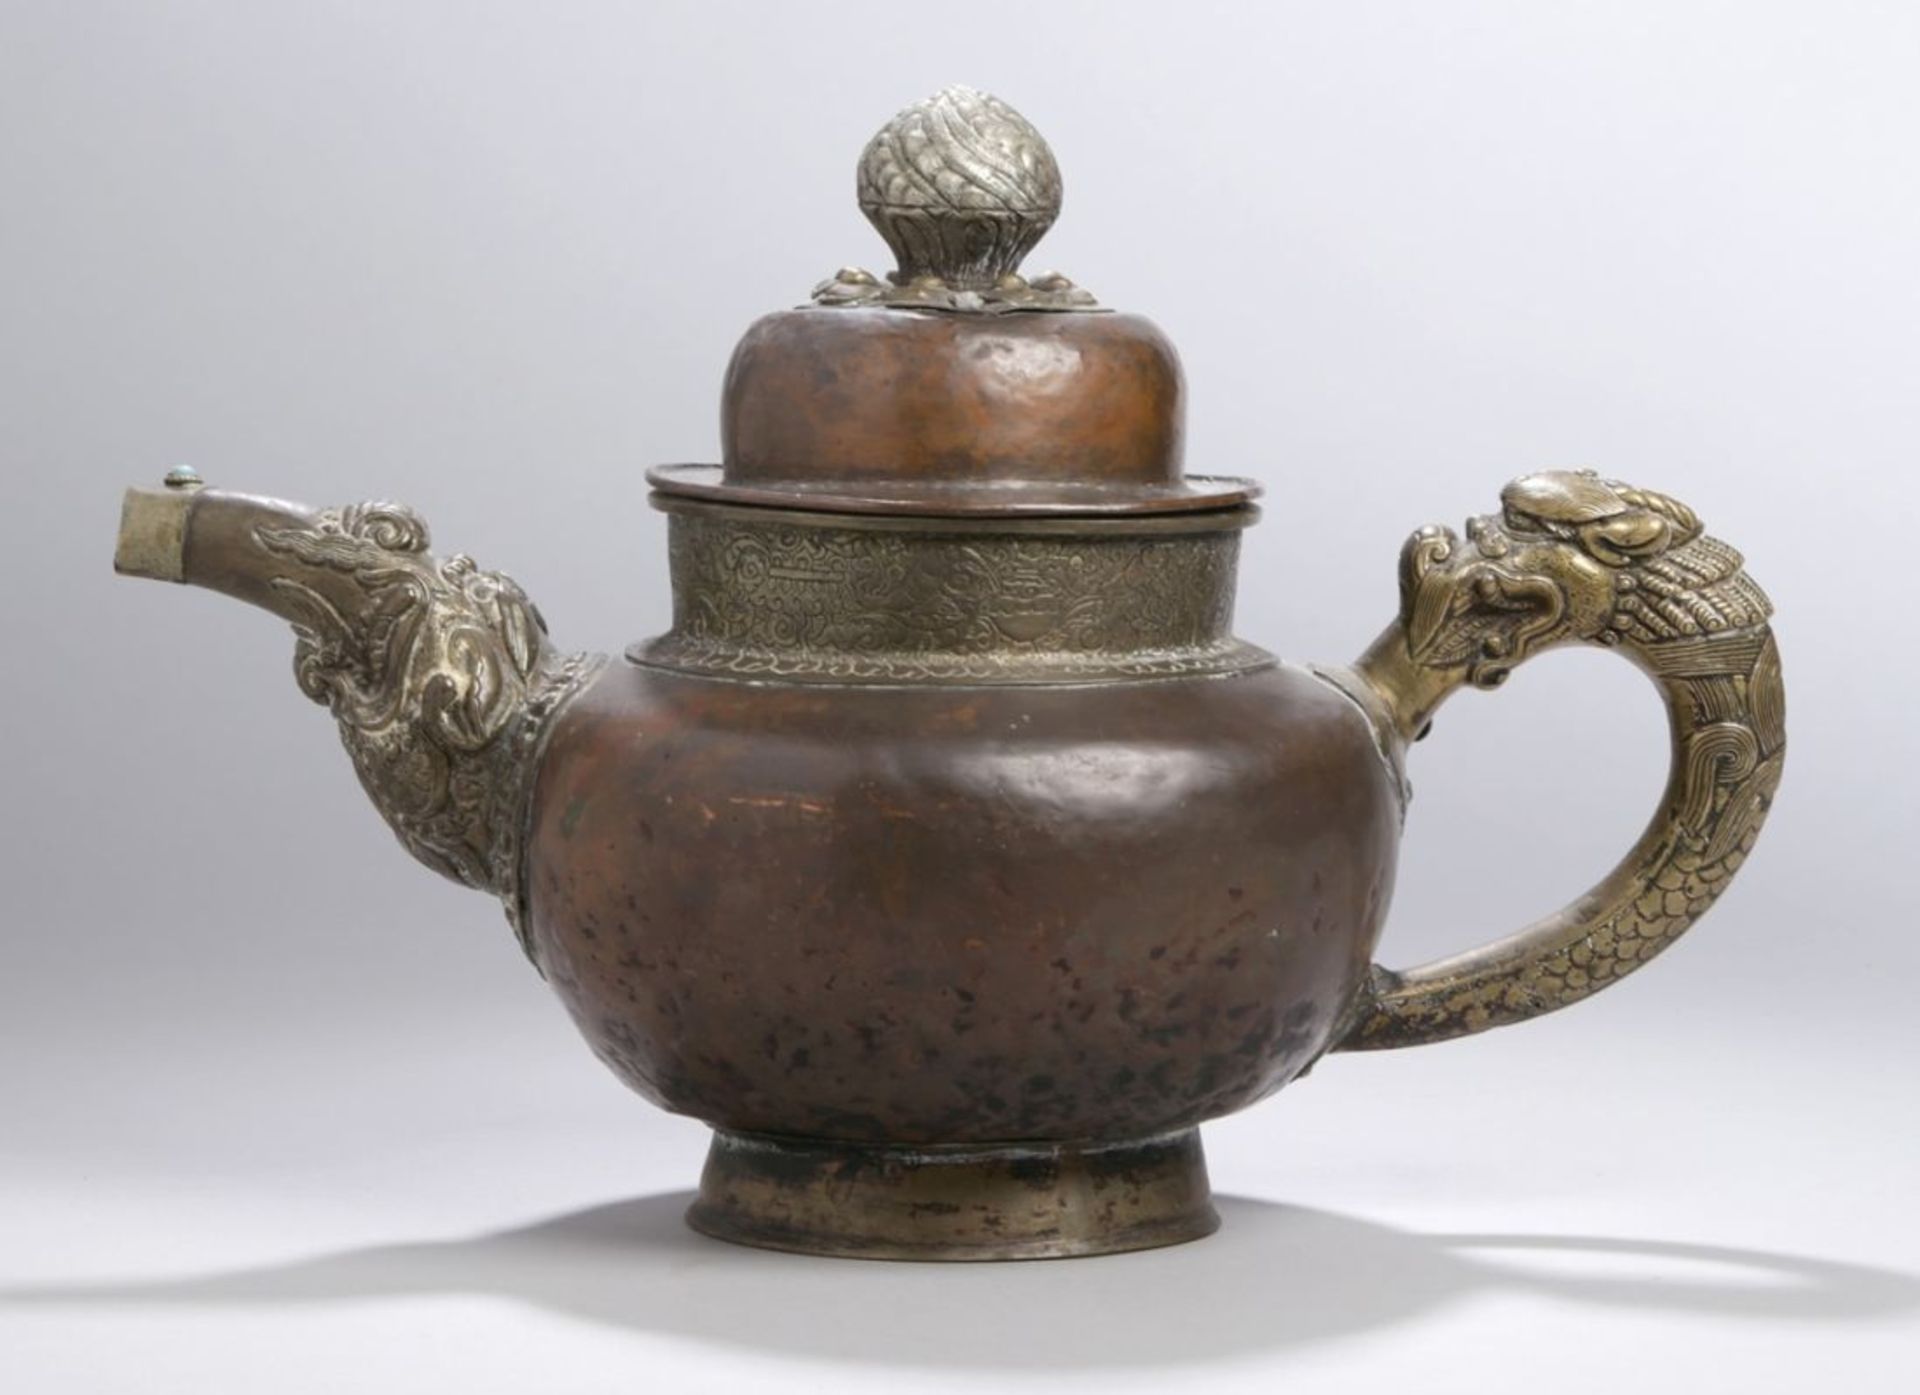 Kupfer-Altarritualkanne, Tibet, 18. Jh., stiltypische Form mit Schwanenhalsausguss mit